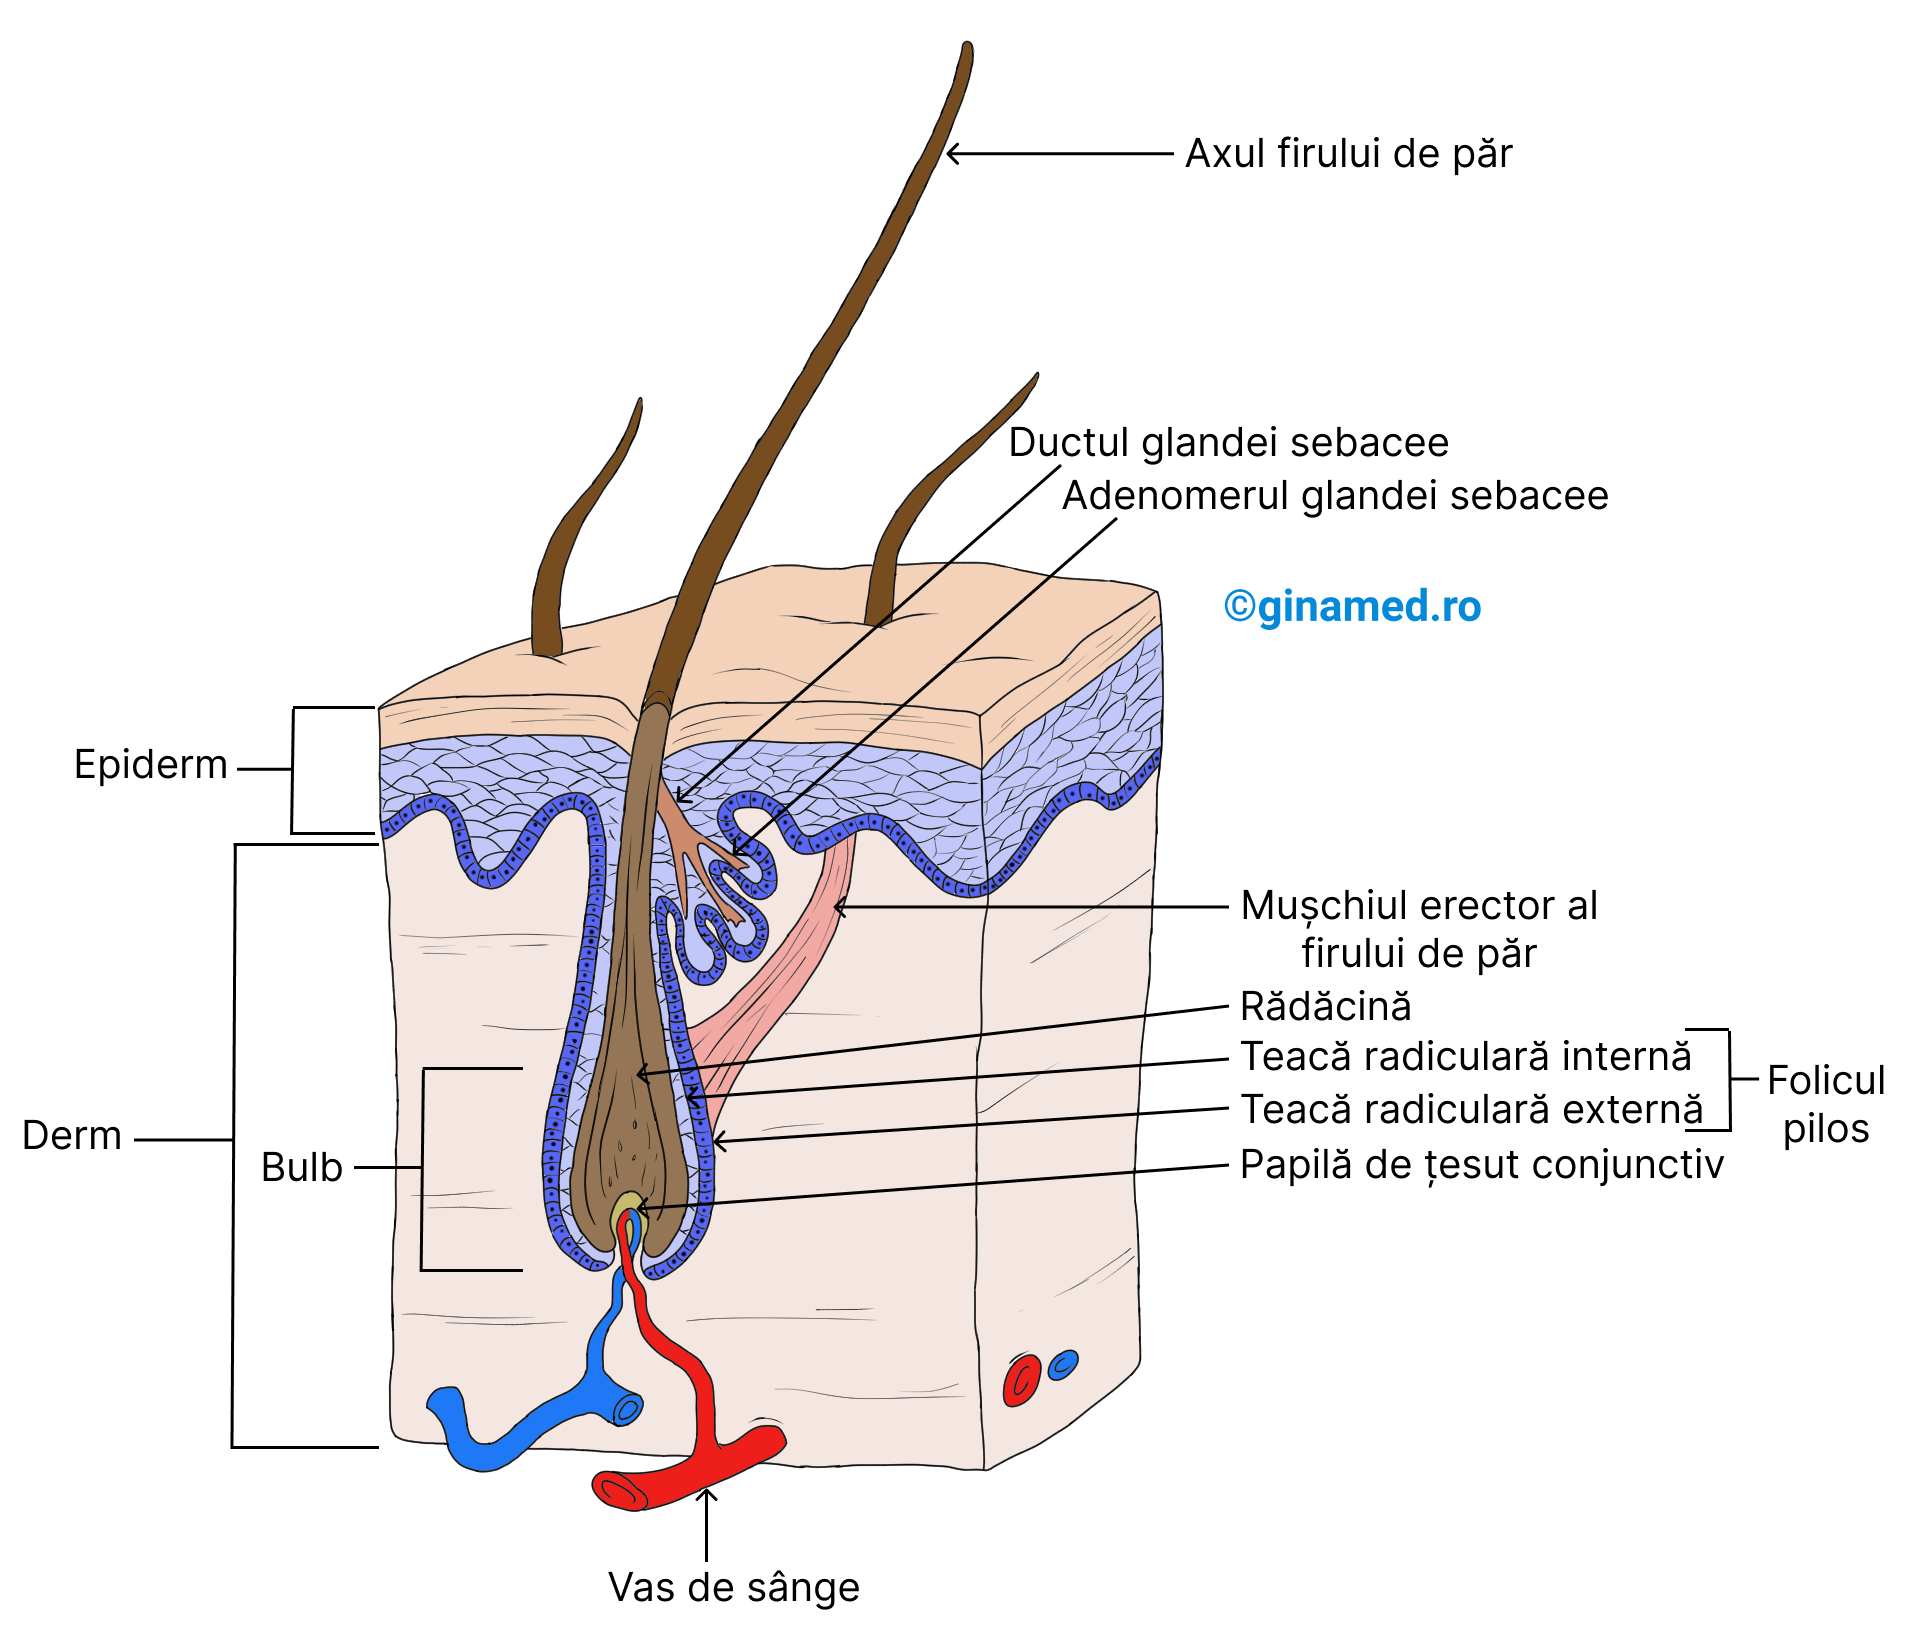 Firul de păr și structurile sale asociate. Completare: <b>Adenomerul glandei sebacee</b> este unitatea secretorie a glandei sebacee alcătuită din celule cu funcție secretorie.